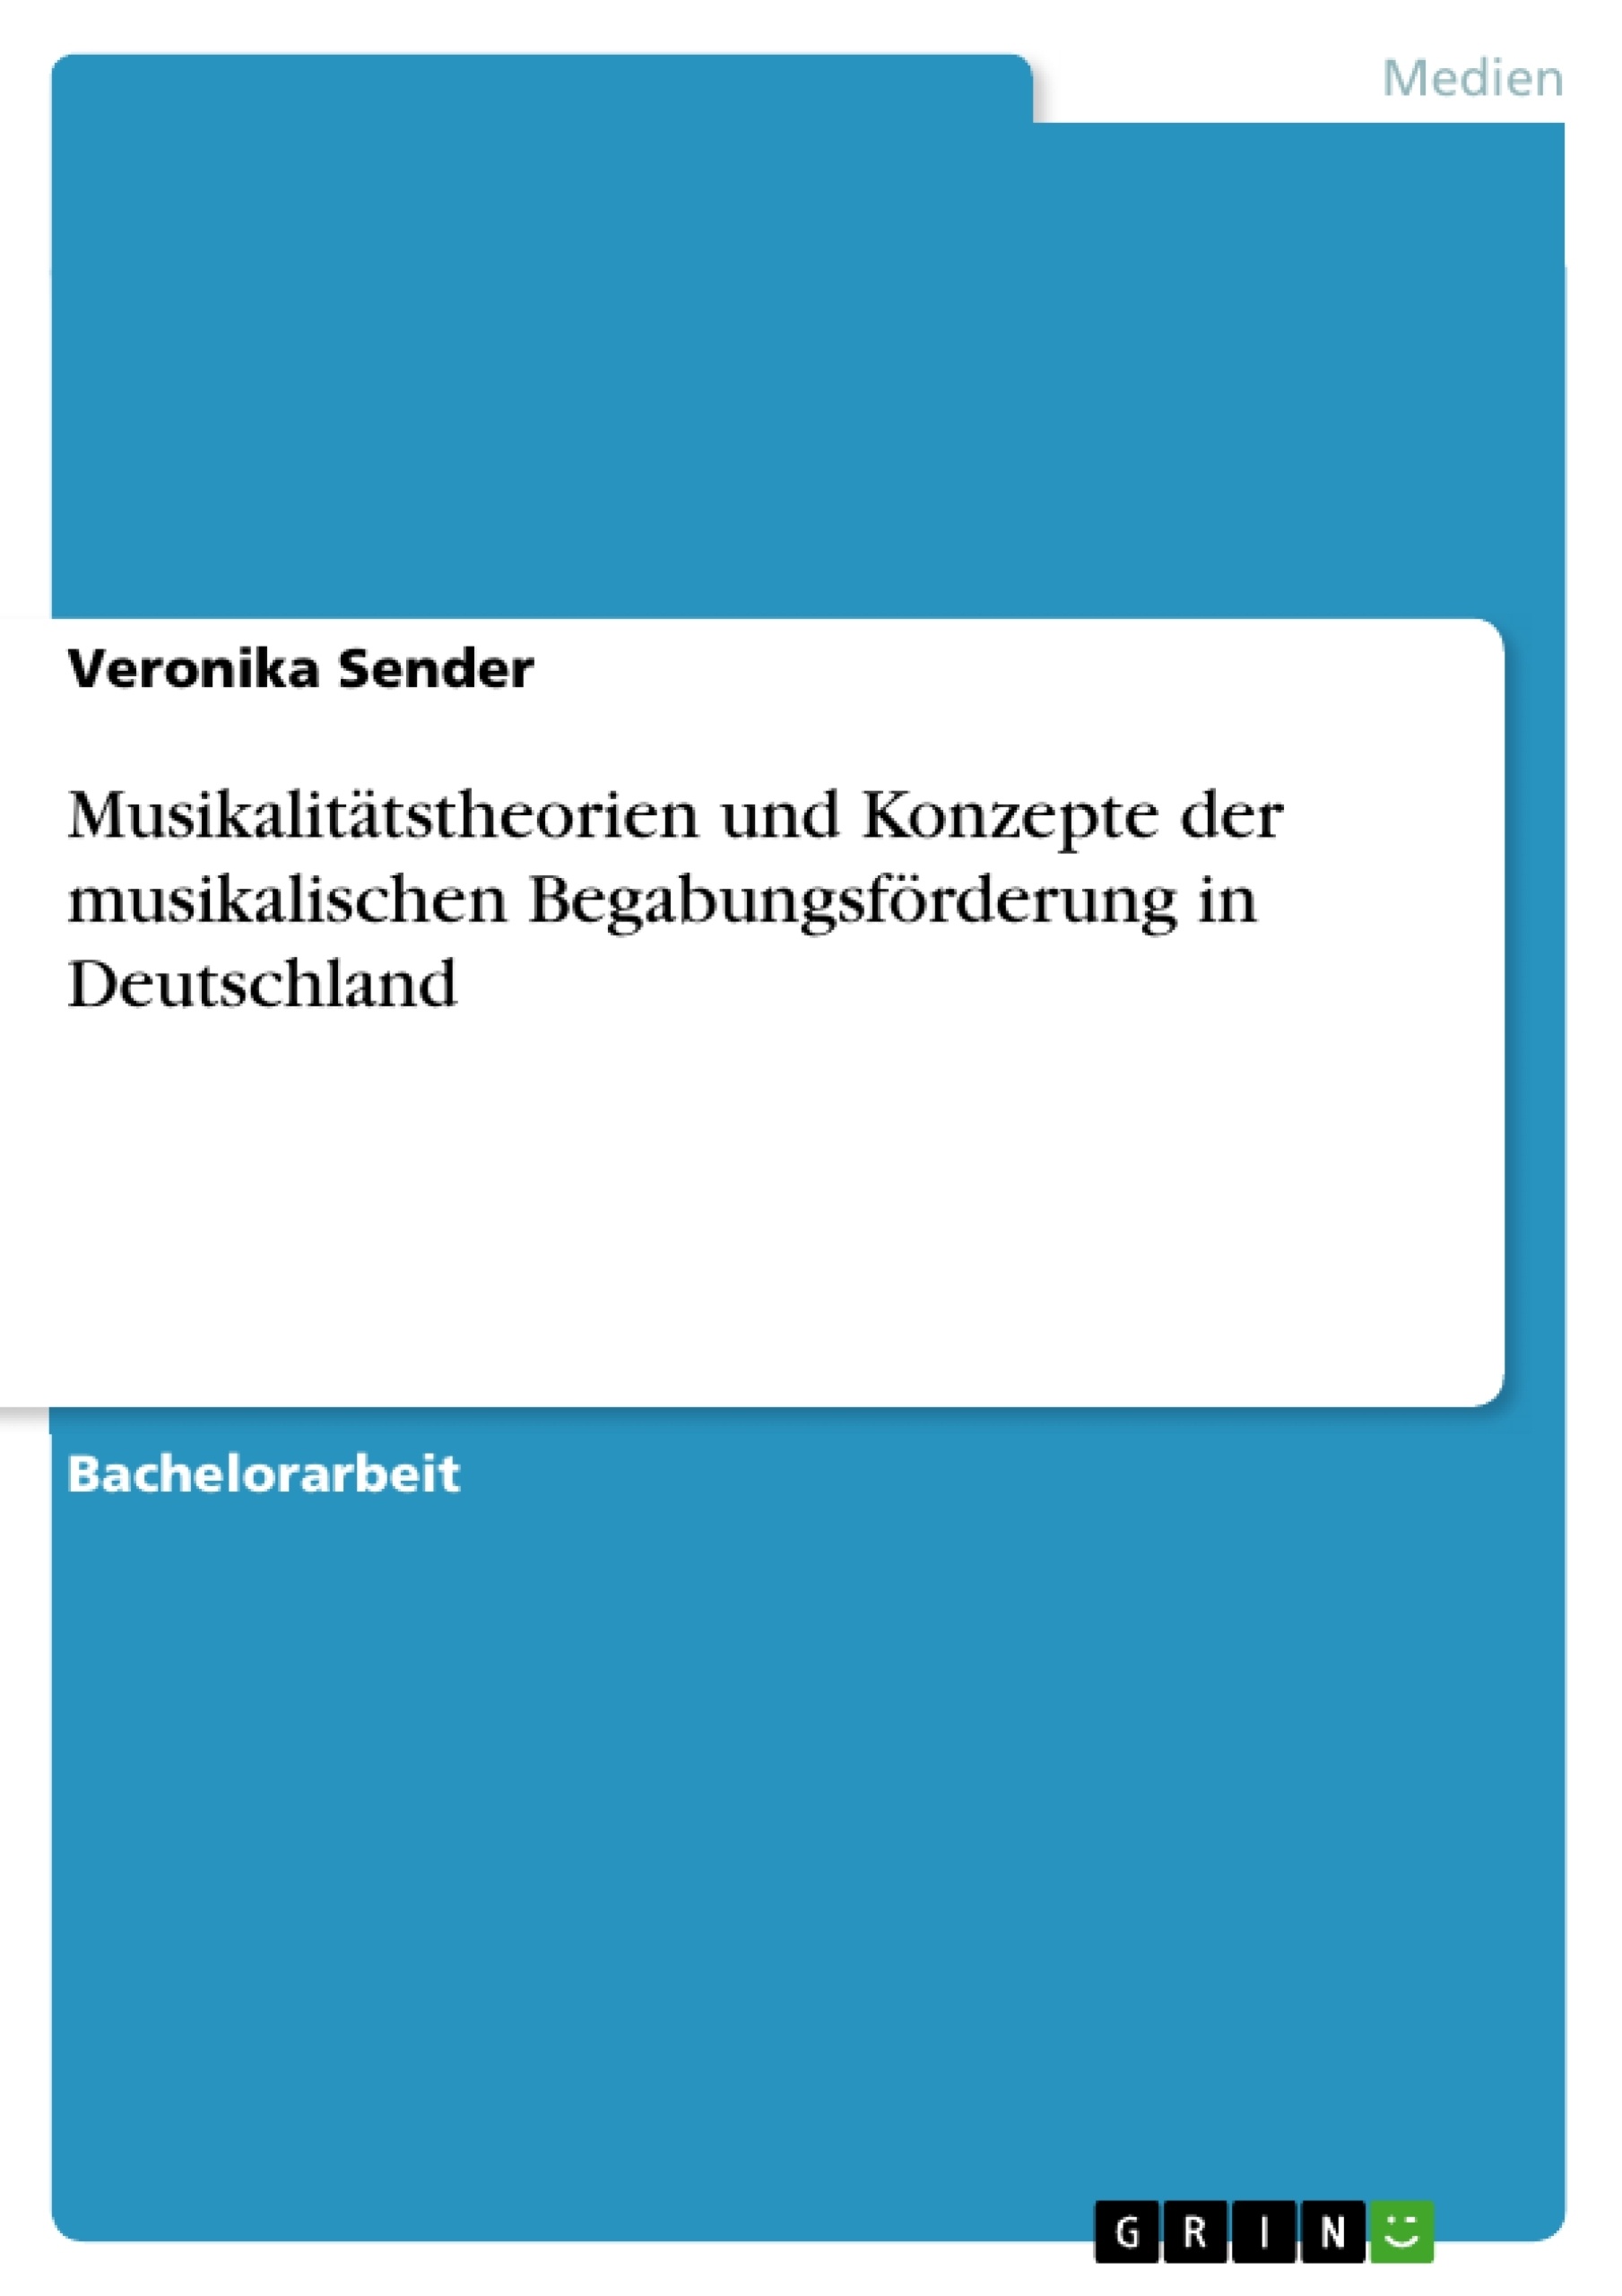 Titre: Musikalitätstheorien und Konzepte der musikalischen Begabungsförderung in Deutschland